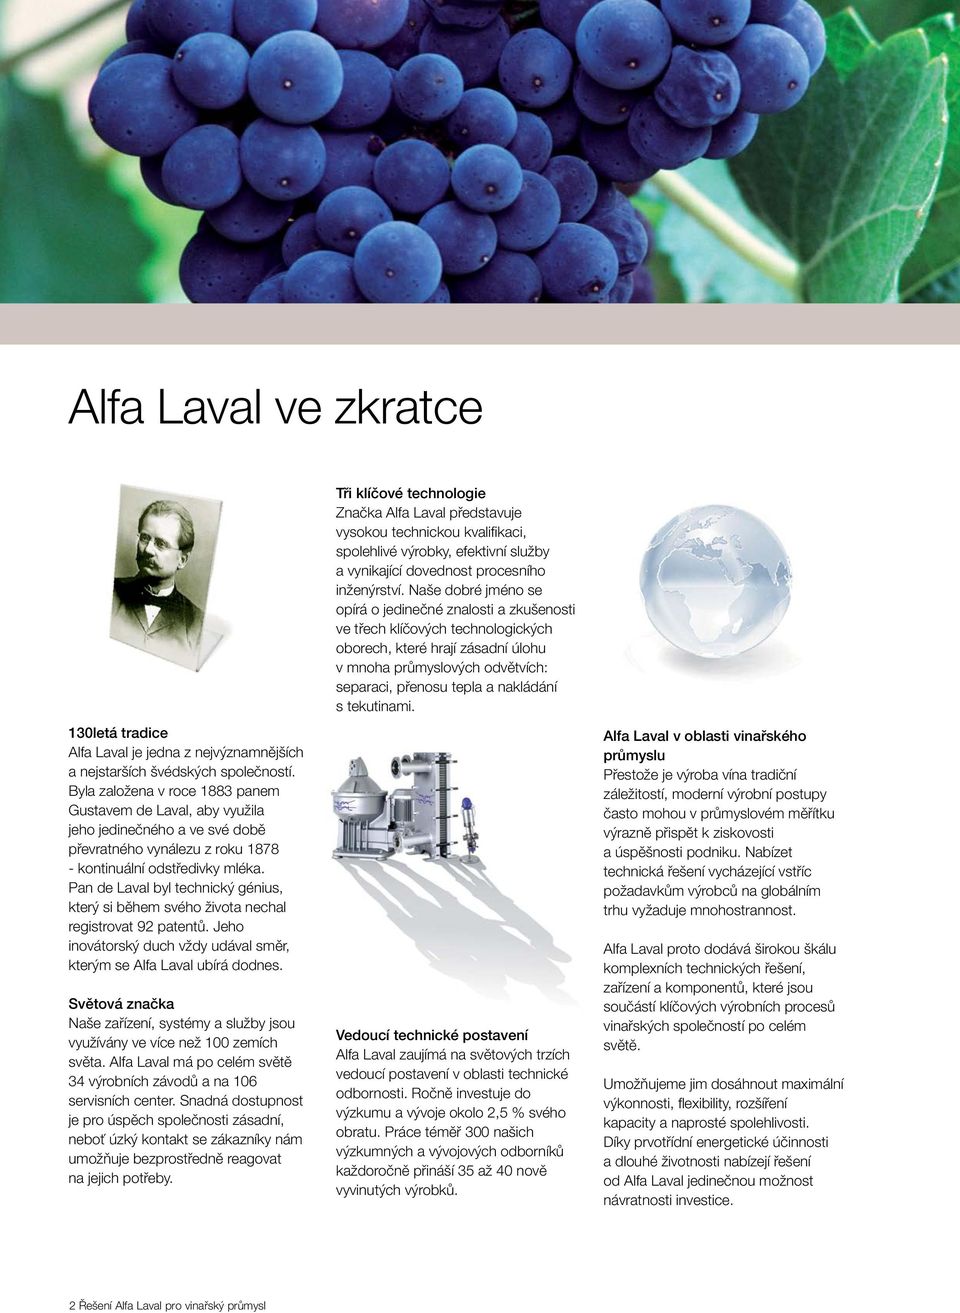 Pan de Laval byl technický génius, který si během svého života nechal registrovat 92 patentů. Jeho inovátorský duch vždy udával směr, kterým se Alfa Laval ubírá dodnes.